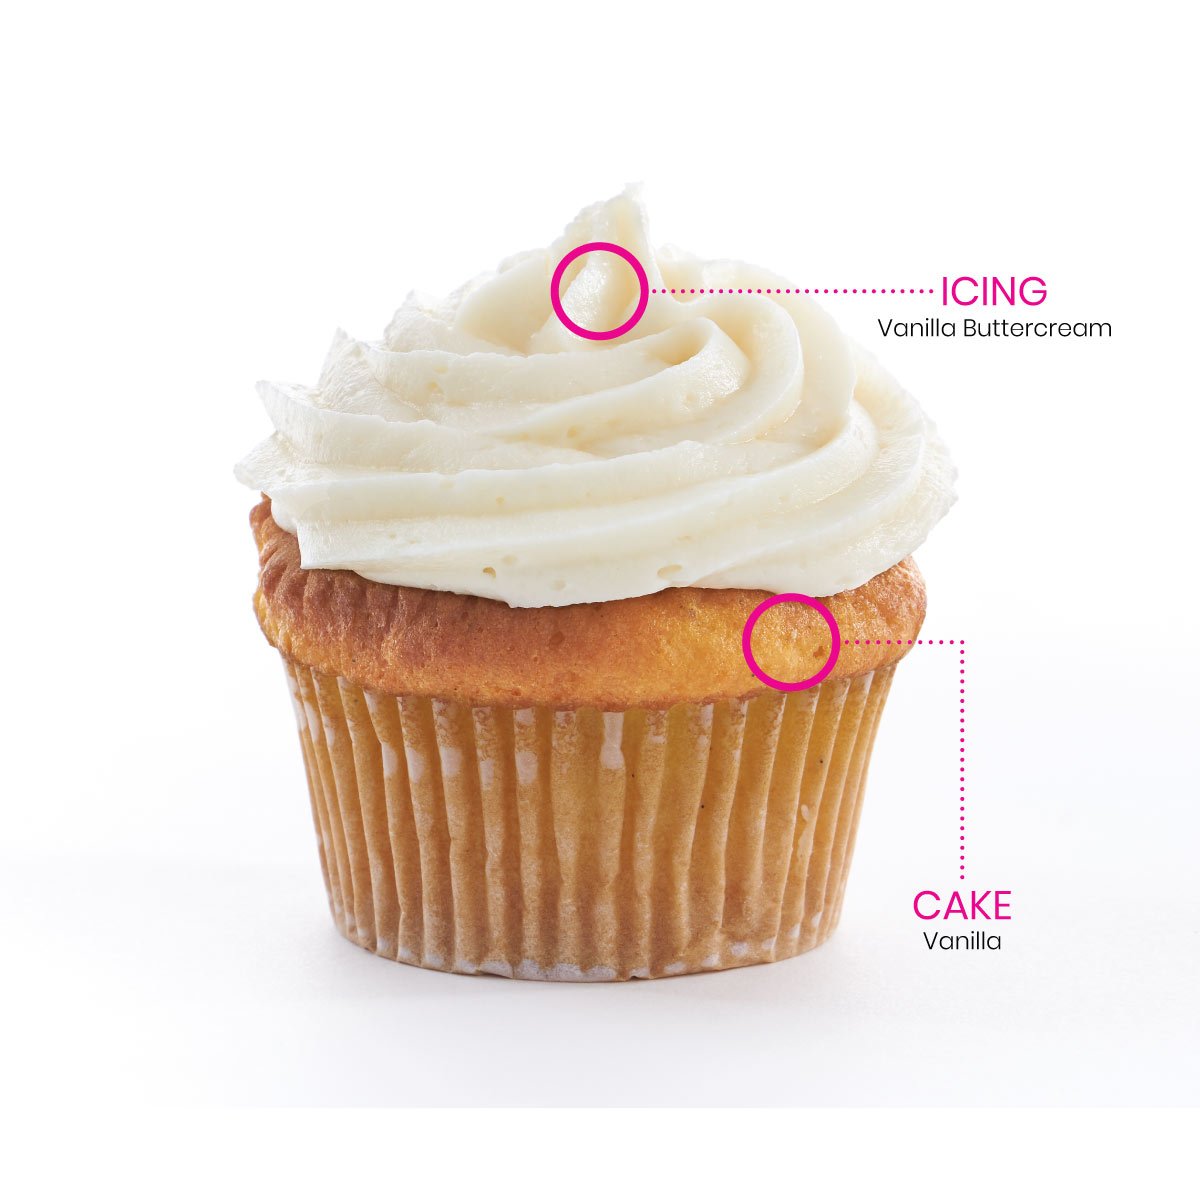 2048 cupcakes Diagram